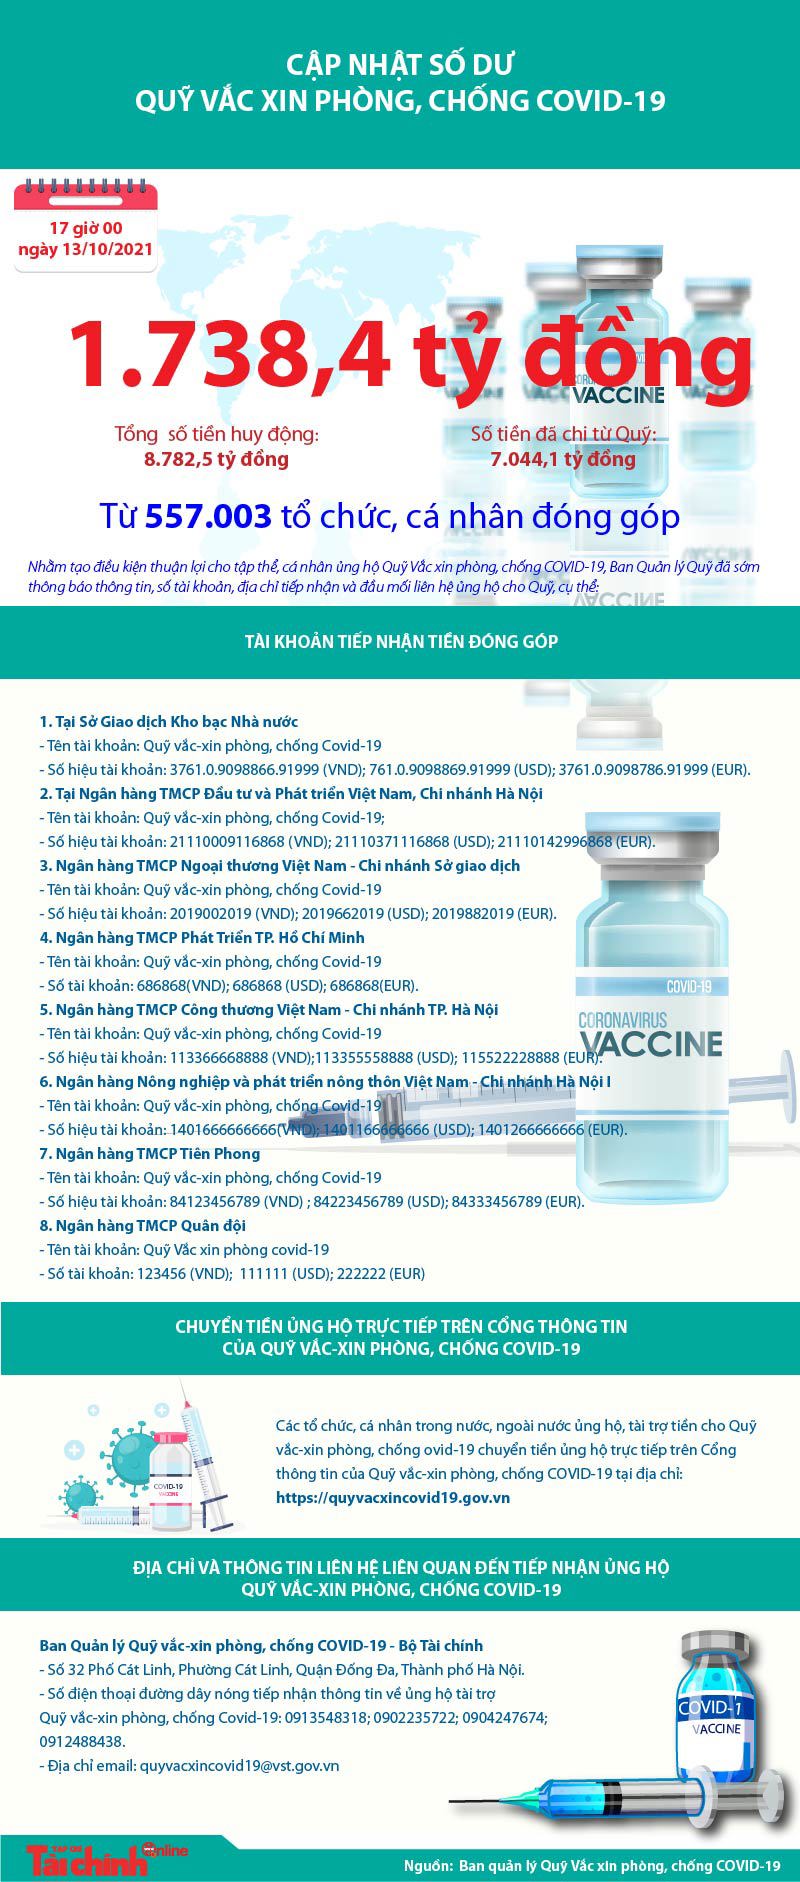 [Infographics] Quỹ Vắc xin phòng, chống COVID-19 còn dư 1.738,4 tỷ đồng - Ảnh 1